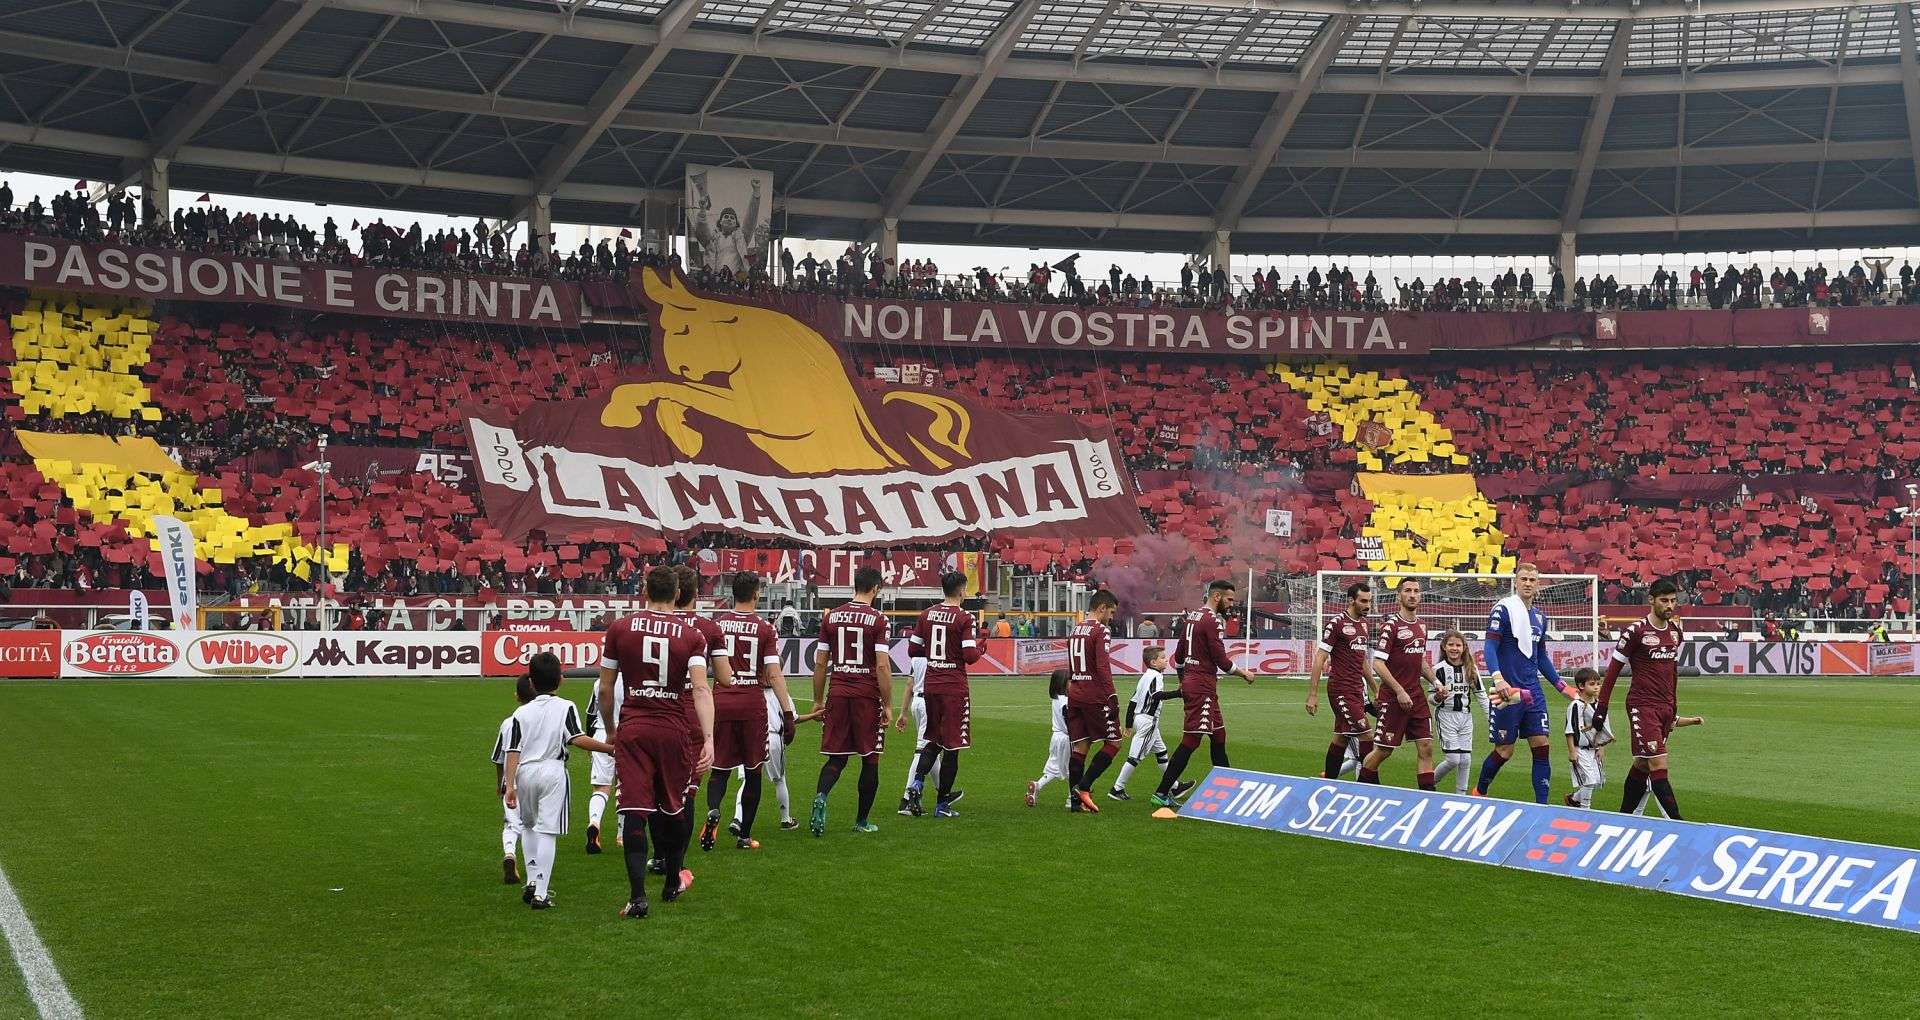 Torino Fans